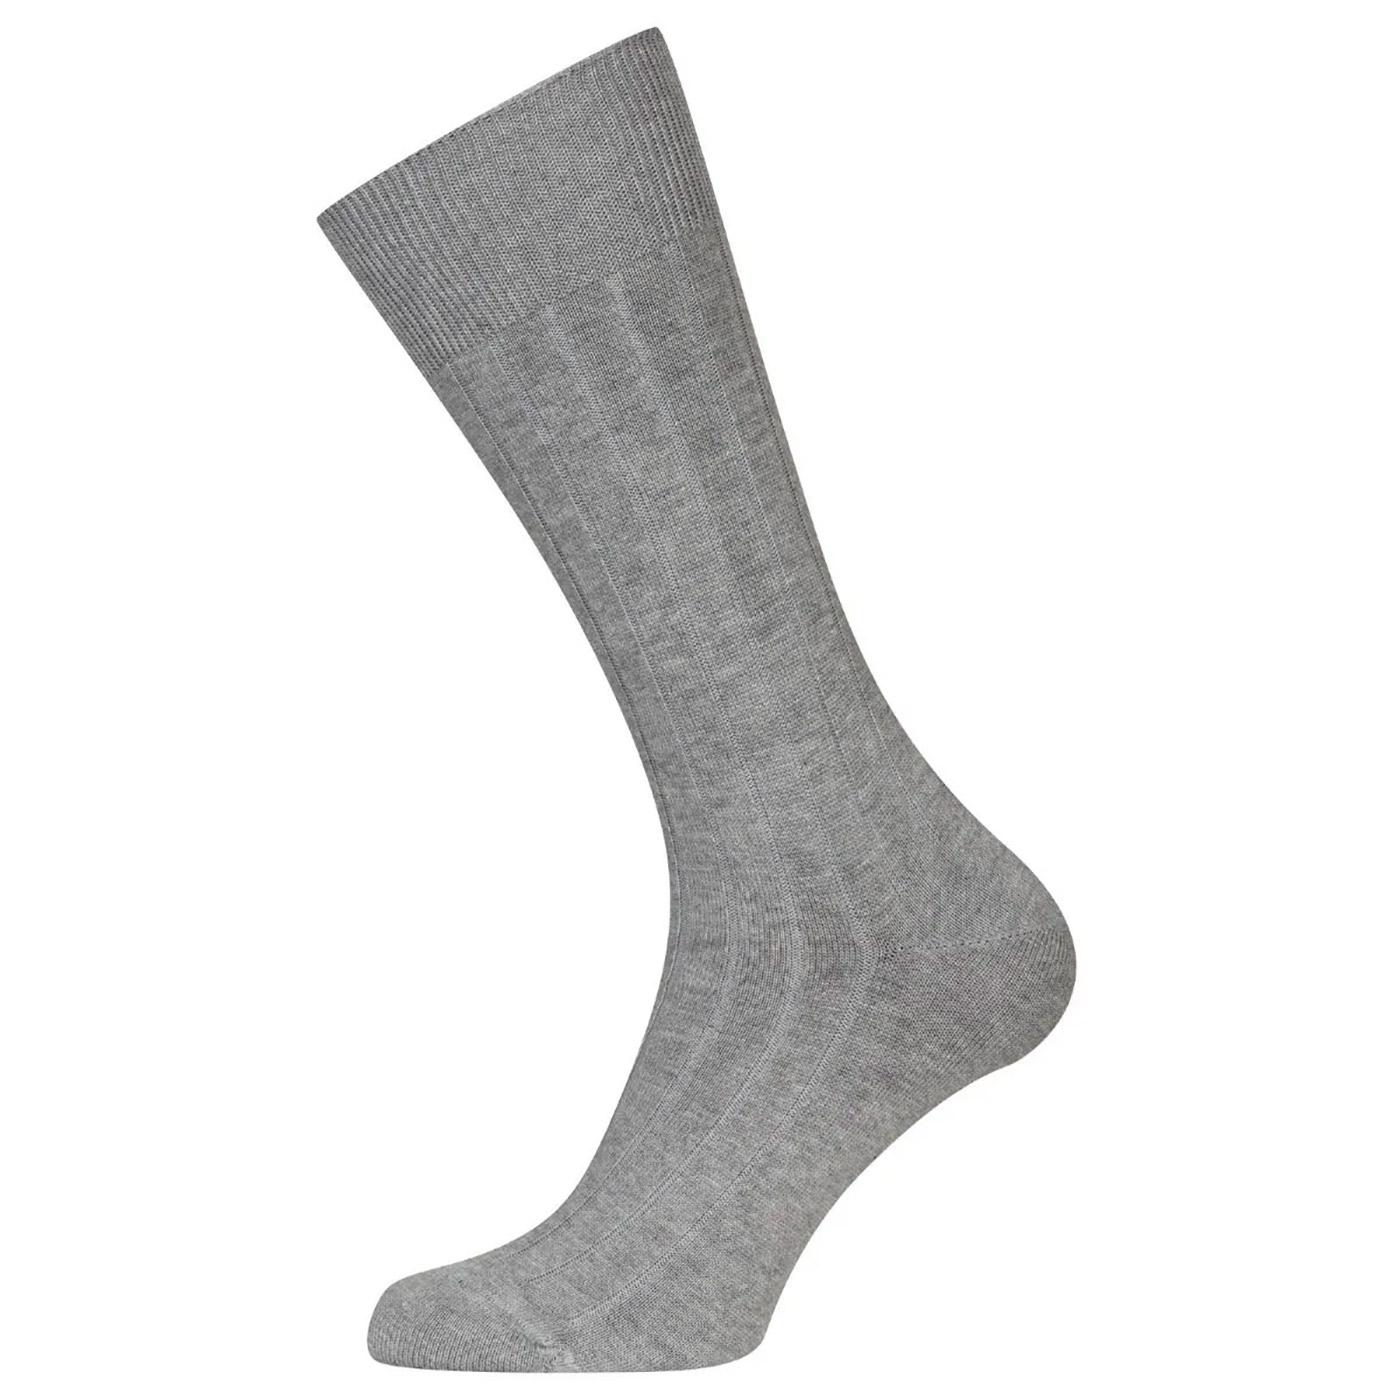 Delta JOHN SMEDLEY Retro Ribbed Socks (Silver)